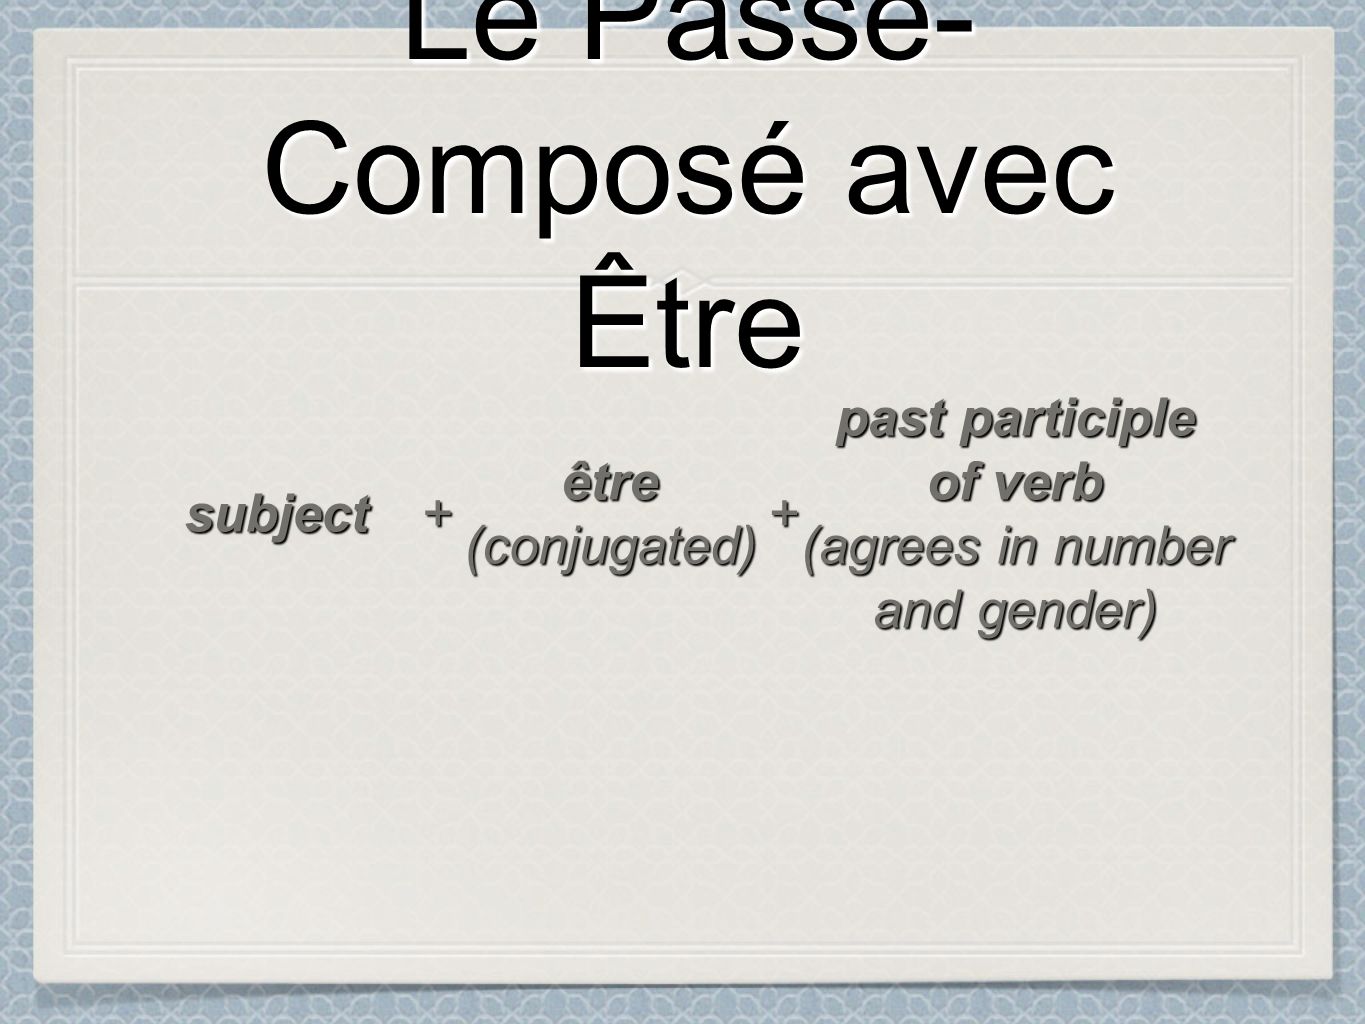 Le Passé- Composé avec Être Le Passé- Composé avec Être subject ++ être(conjugated) past participle of verb (agrees in number and gender)